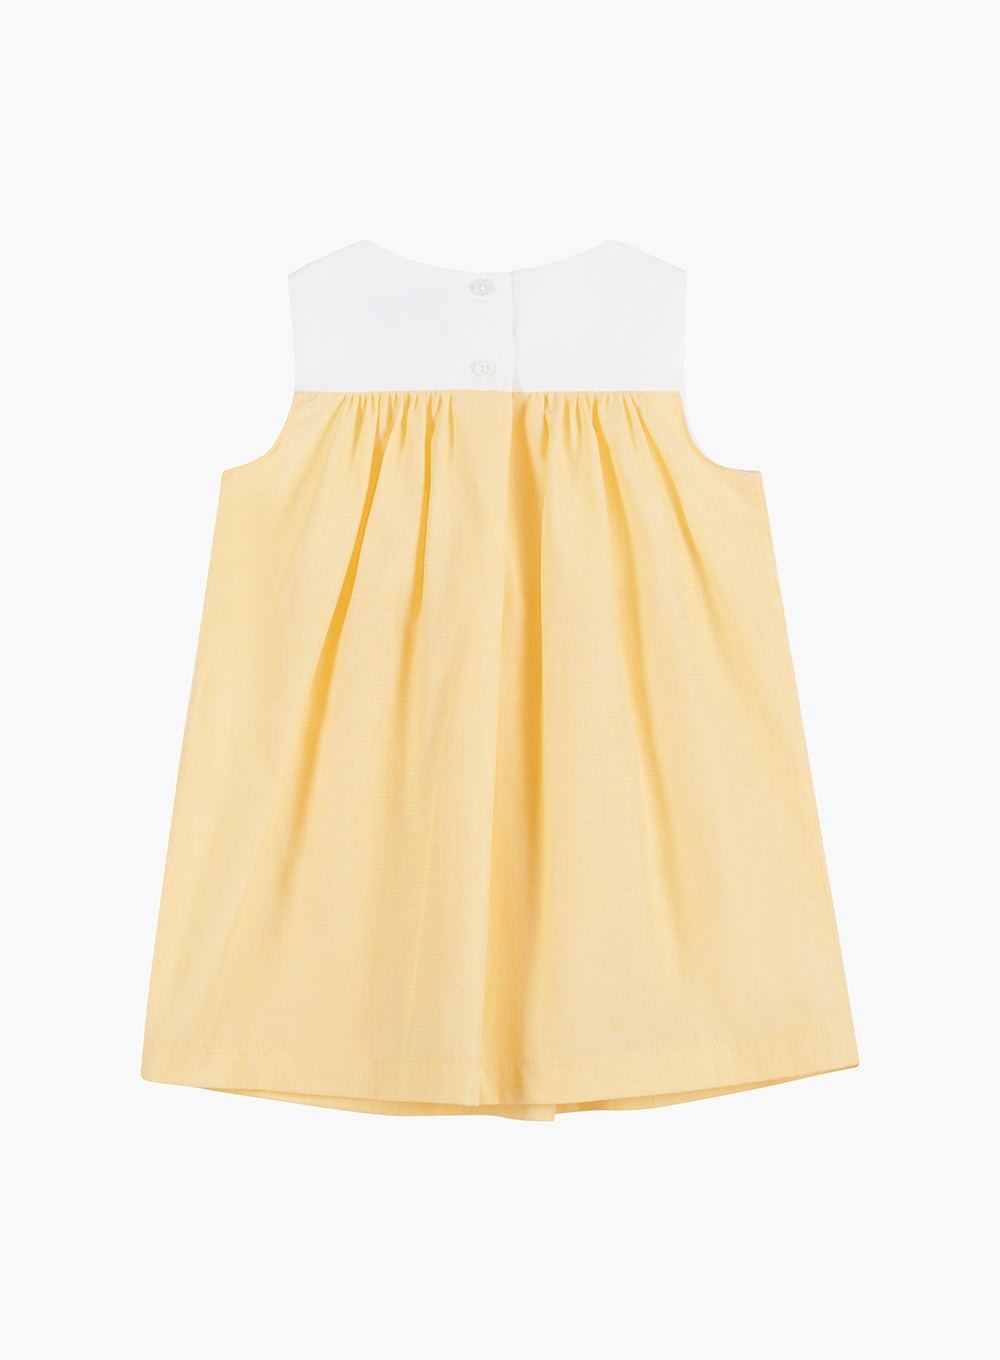 Confiture Dress Little Petal Duck Dress in Sunflower Yellow